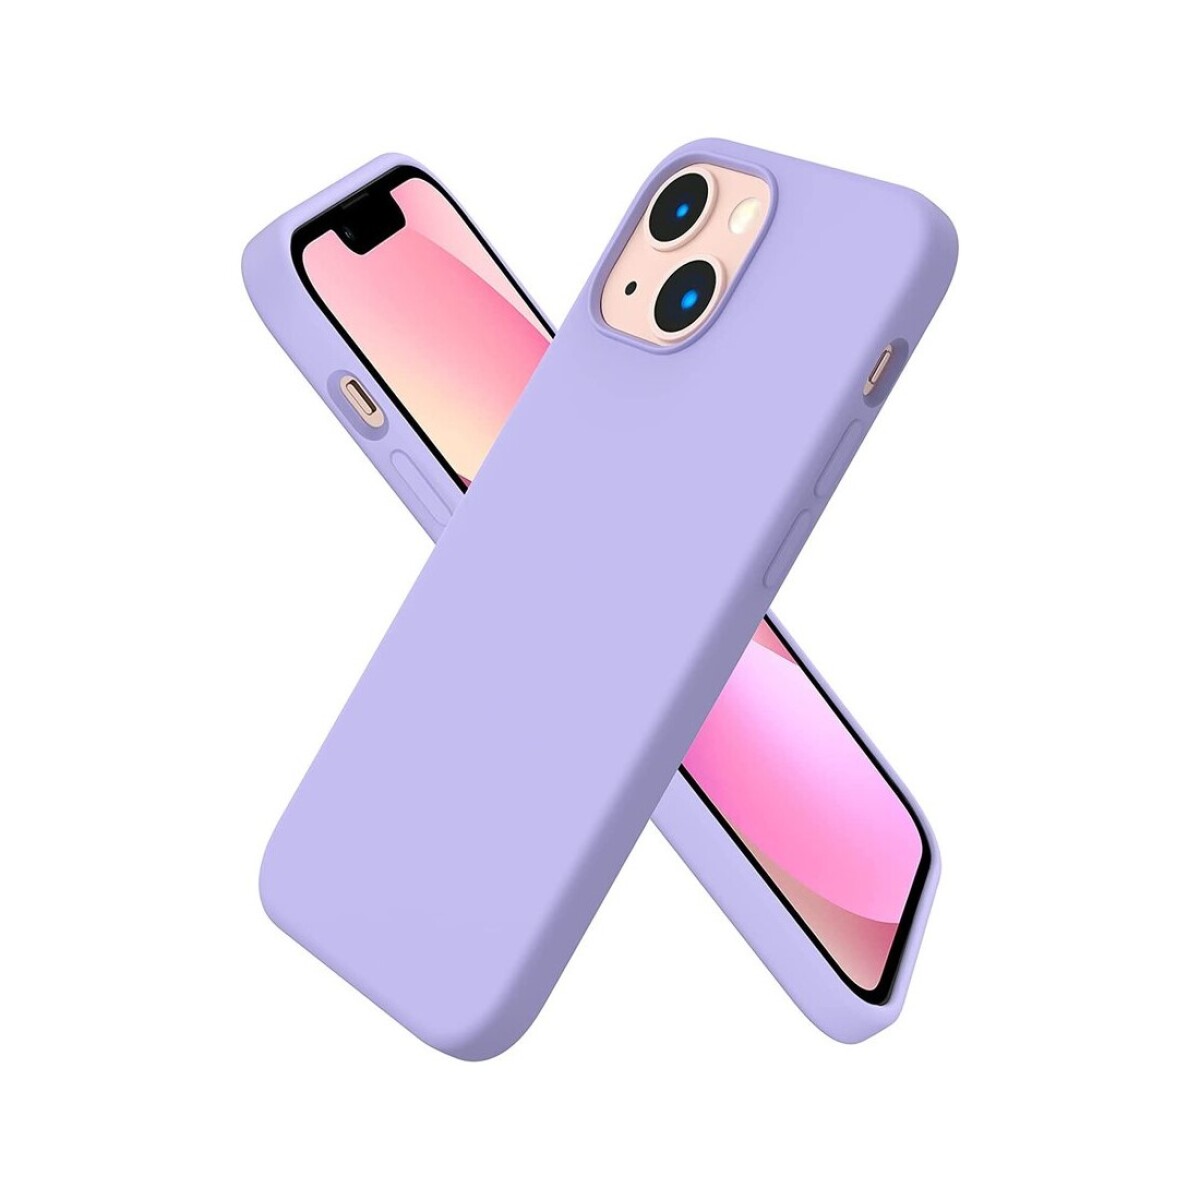 Protector case de silicona para iphone 13 mini - Lila pastel 